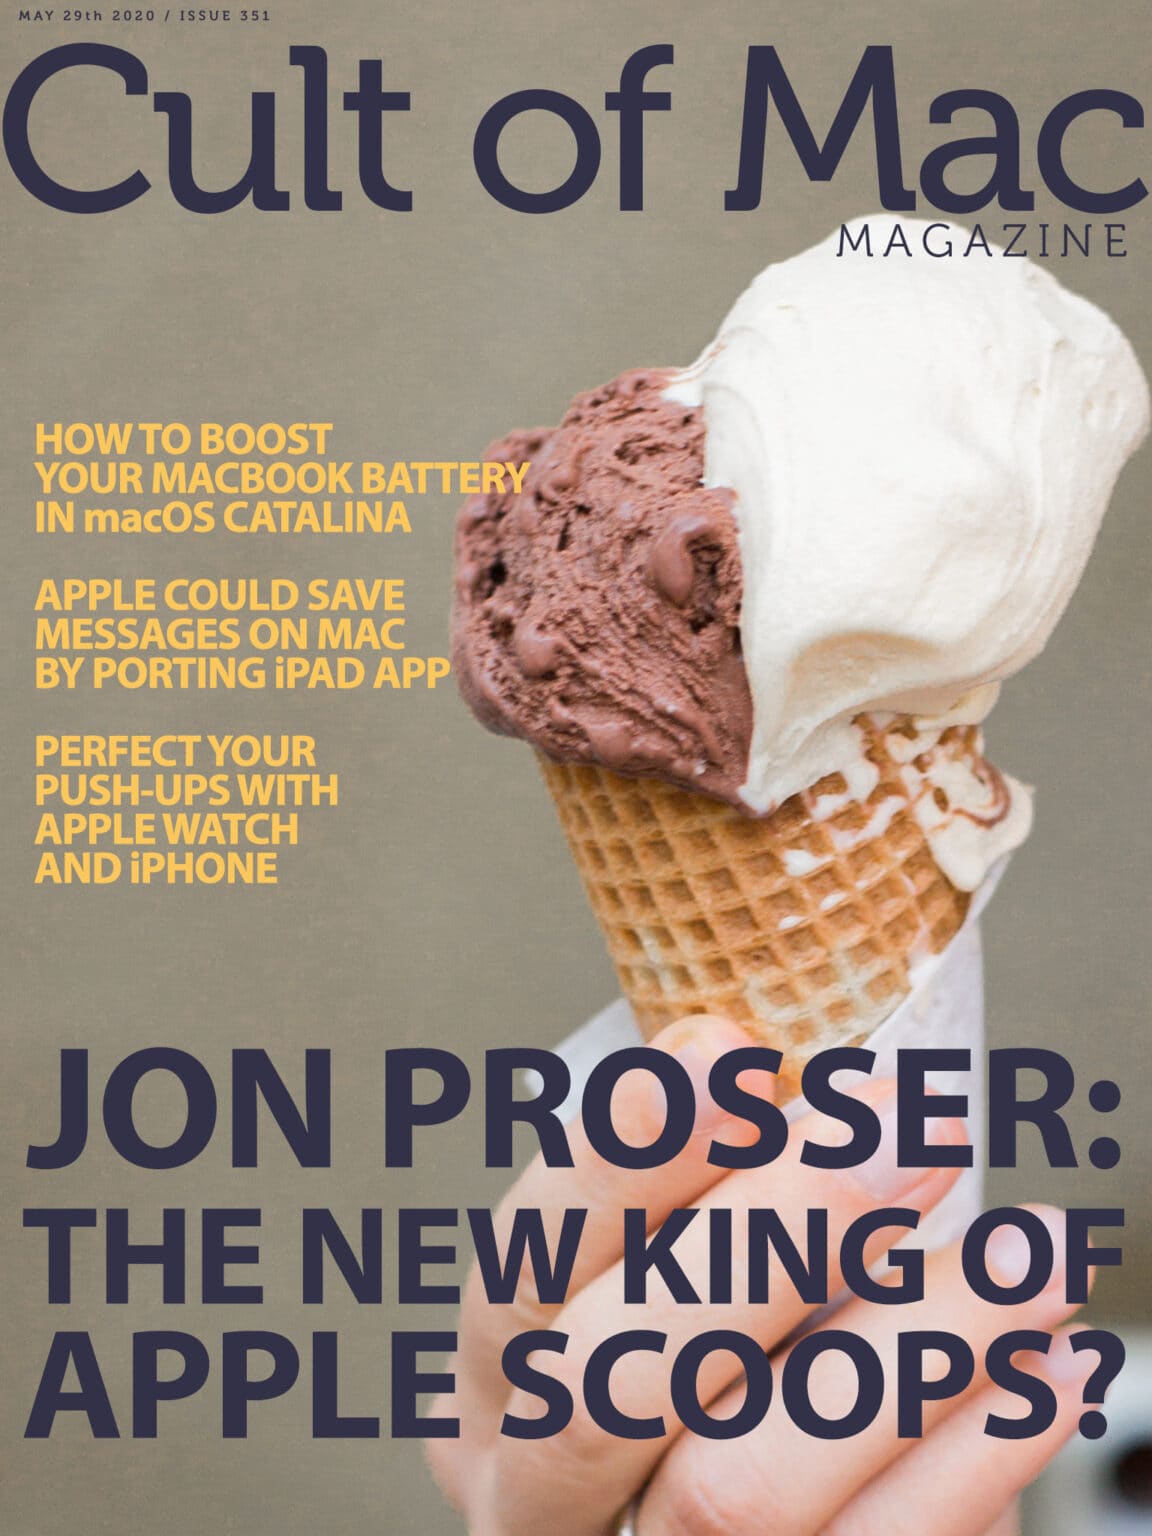 Jon Prosser: The new king of Apple scoops?